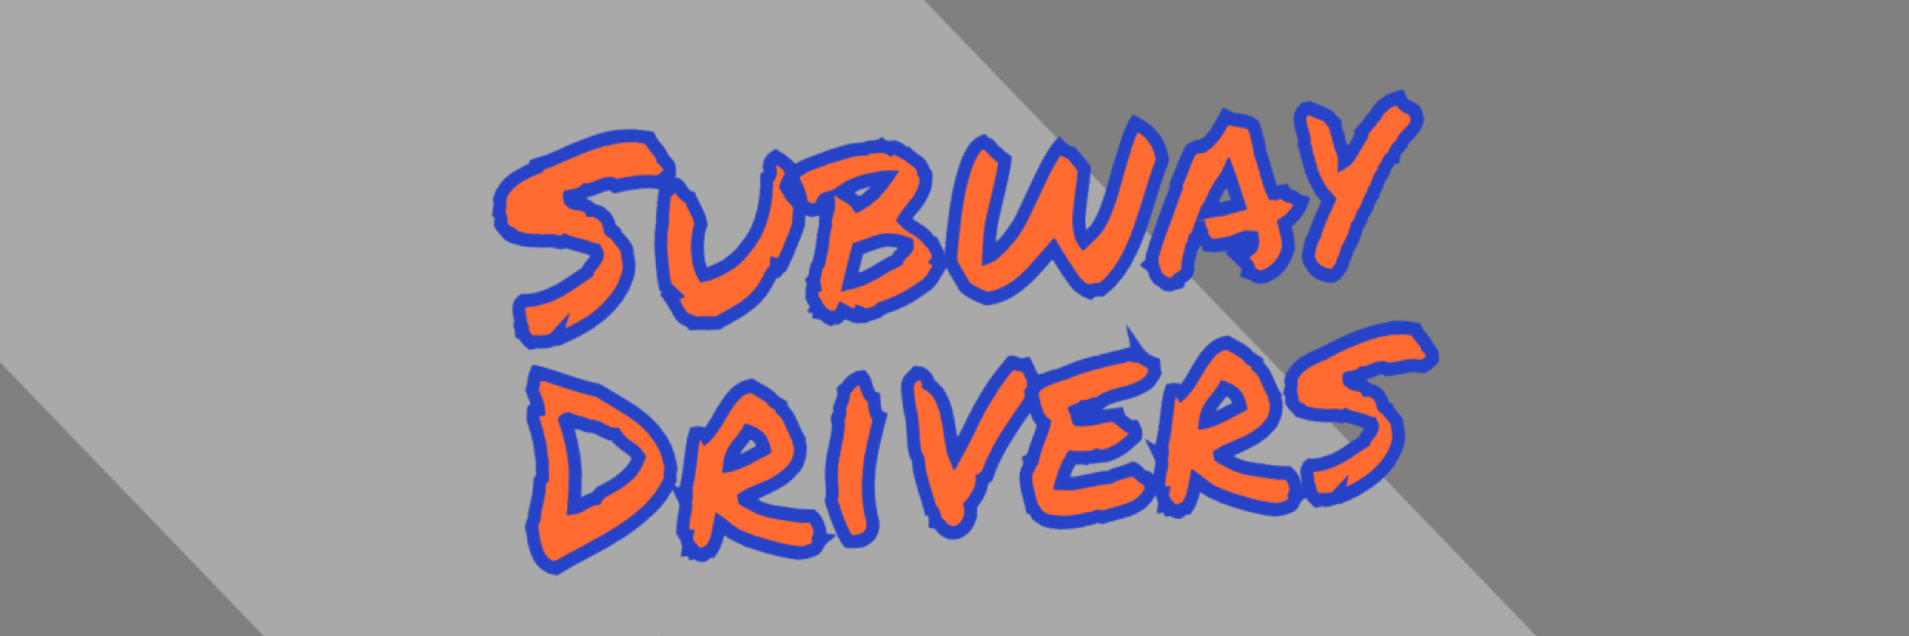 Subway Drivers